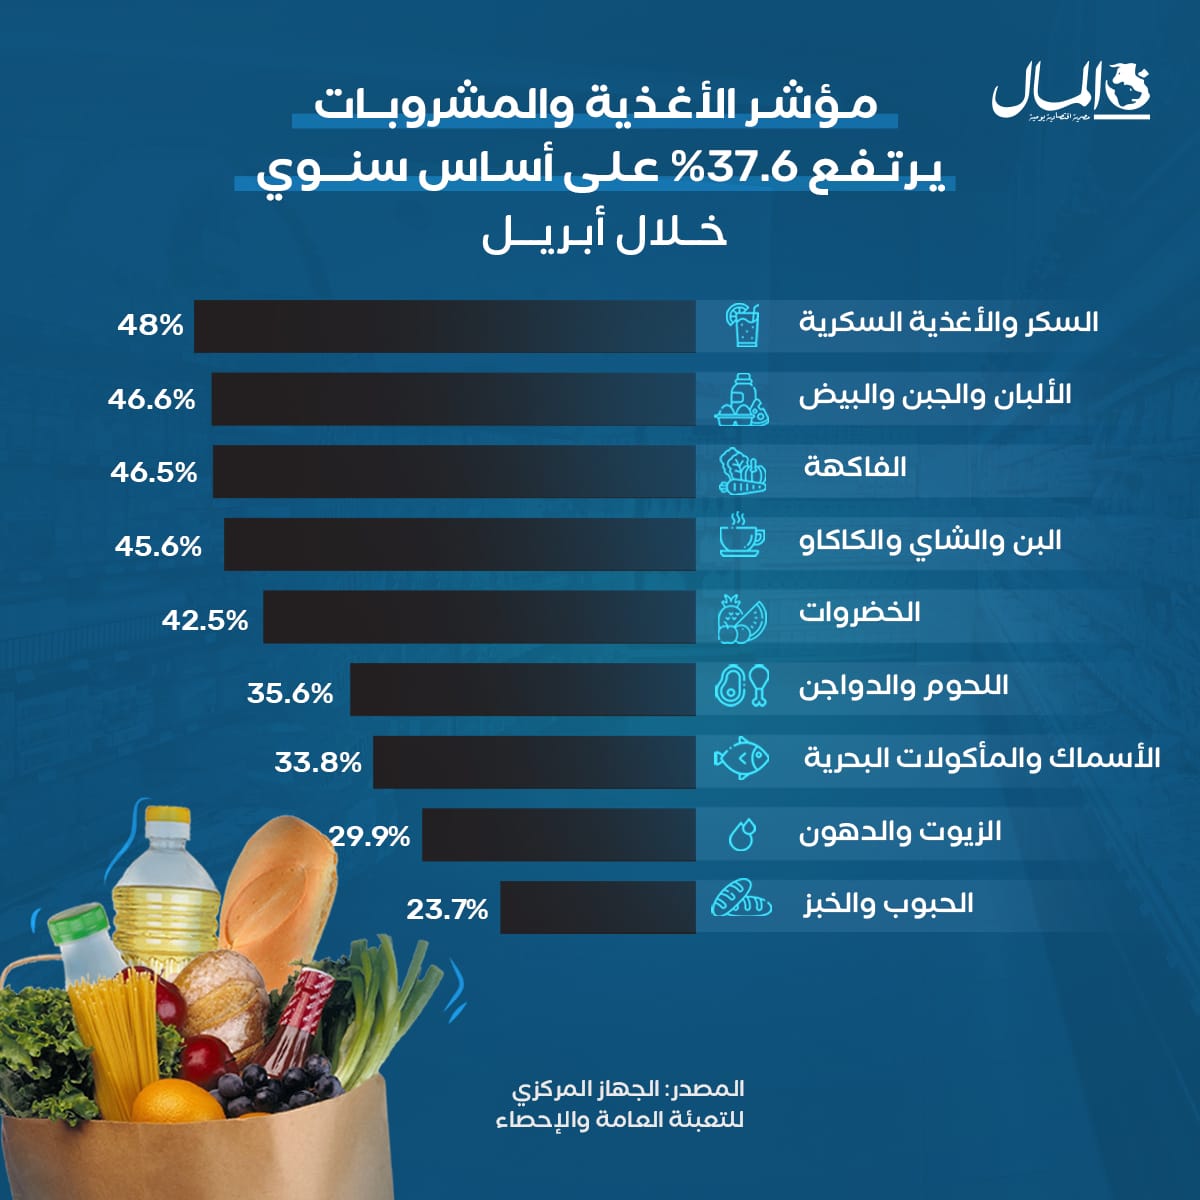 السكر والألبان والأجبان تقود زيادات أسعار الأغذية والمشروبات في مصر خلال شهر أبريل الماضي، وذلك بحسب بيانات الجهاز المركزي للإحصاء 